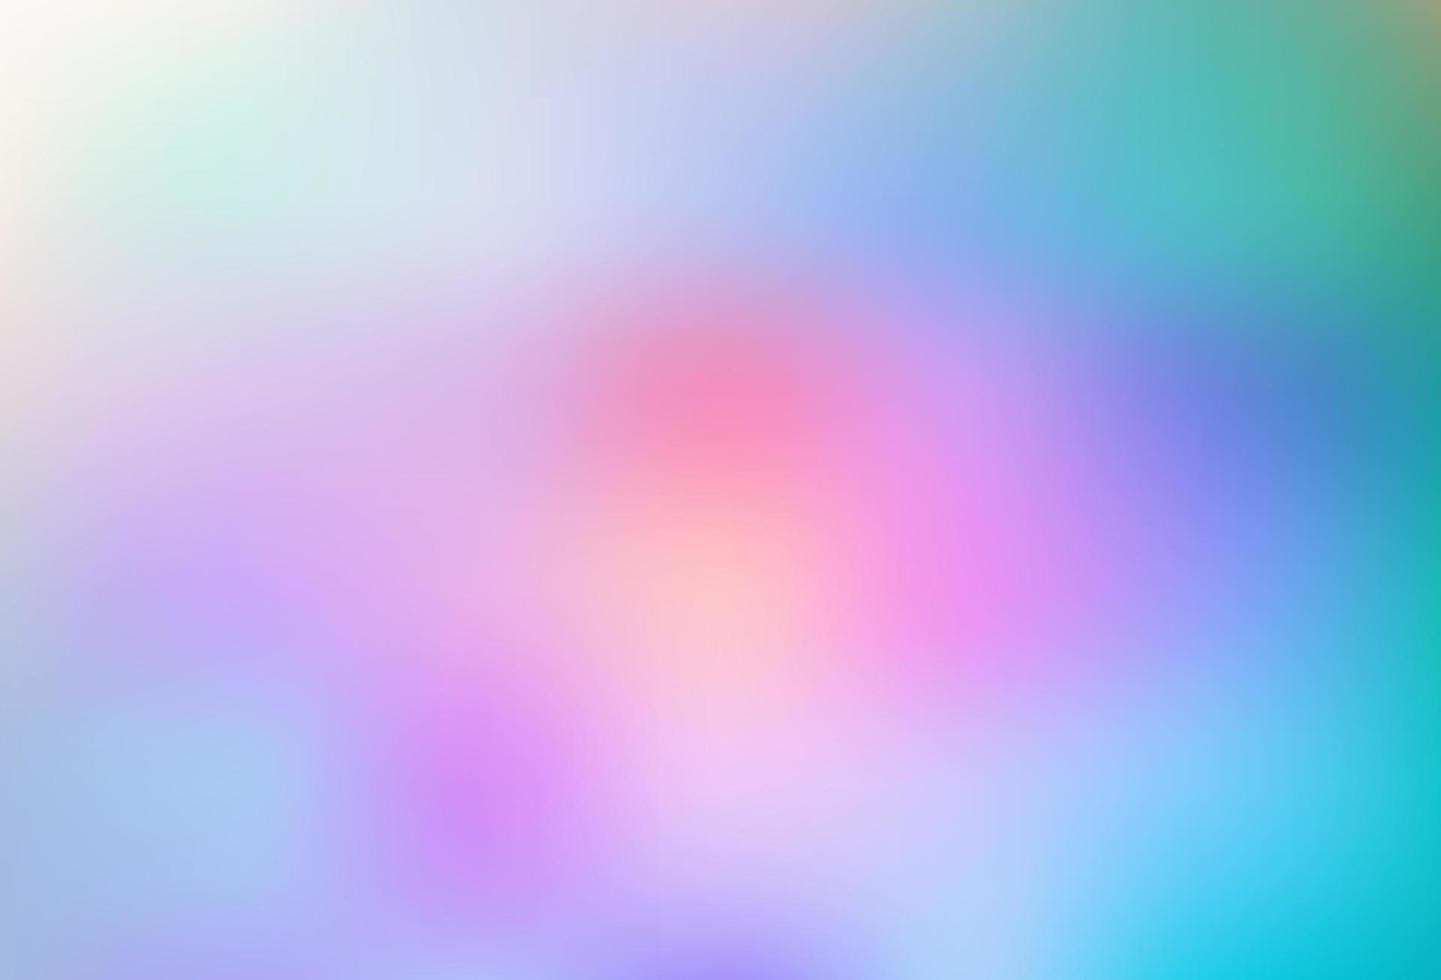 luz multicolor, arco iris vector abstracto plantilla borrosa.